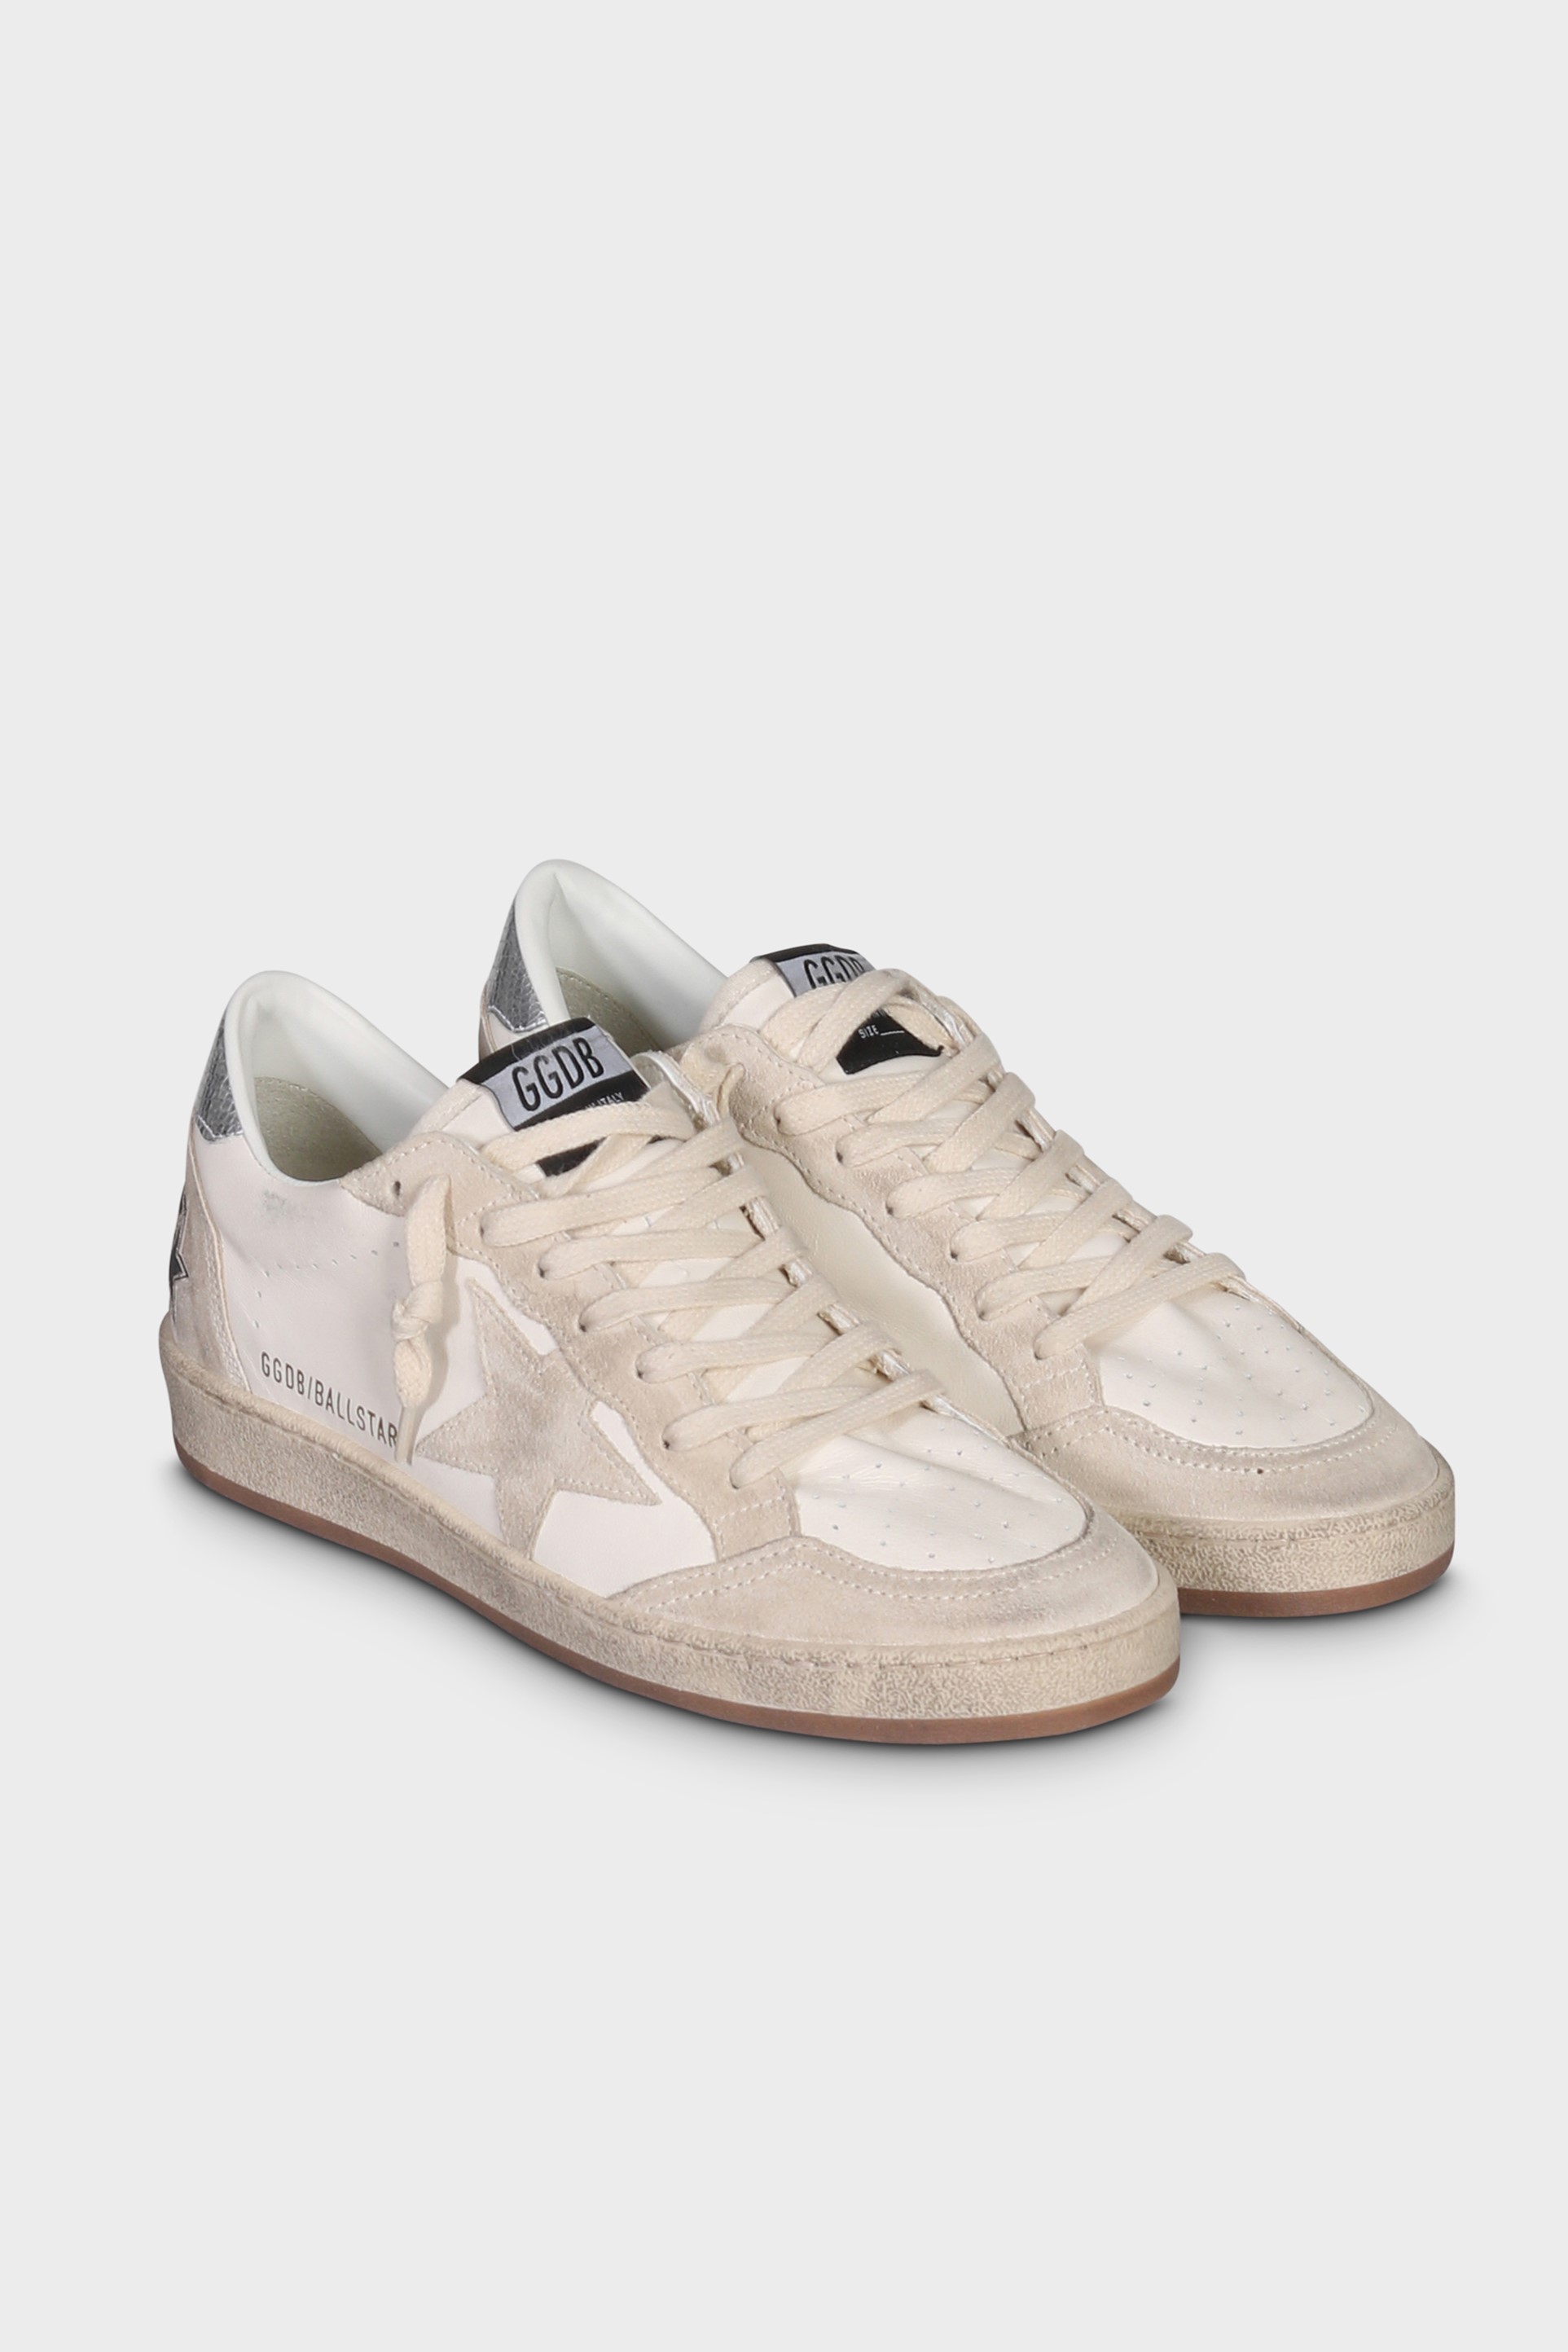 GOLDEN GOOSE Sneaker Ballstar in White/Seedpearl/Silver 47